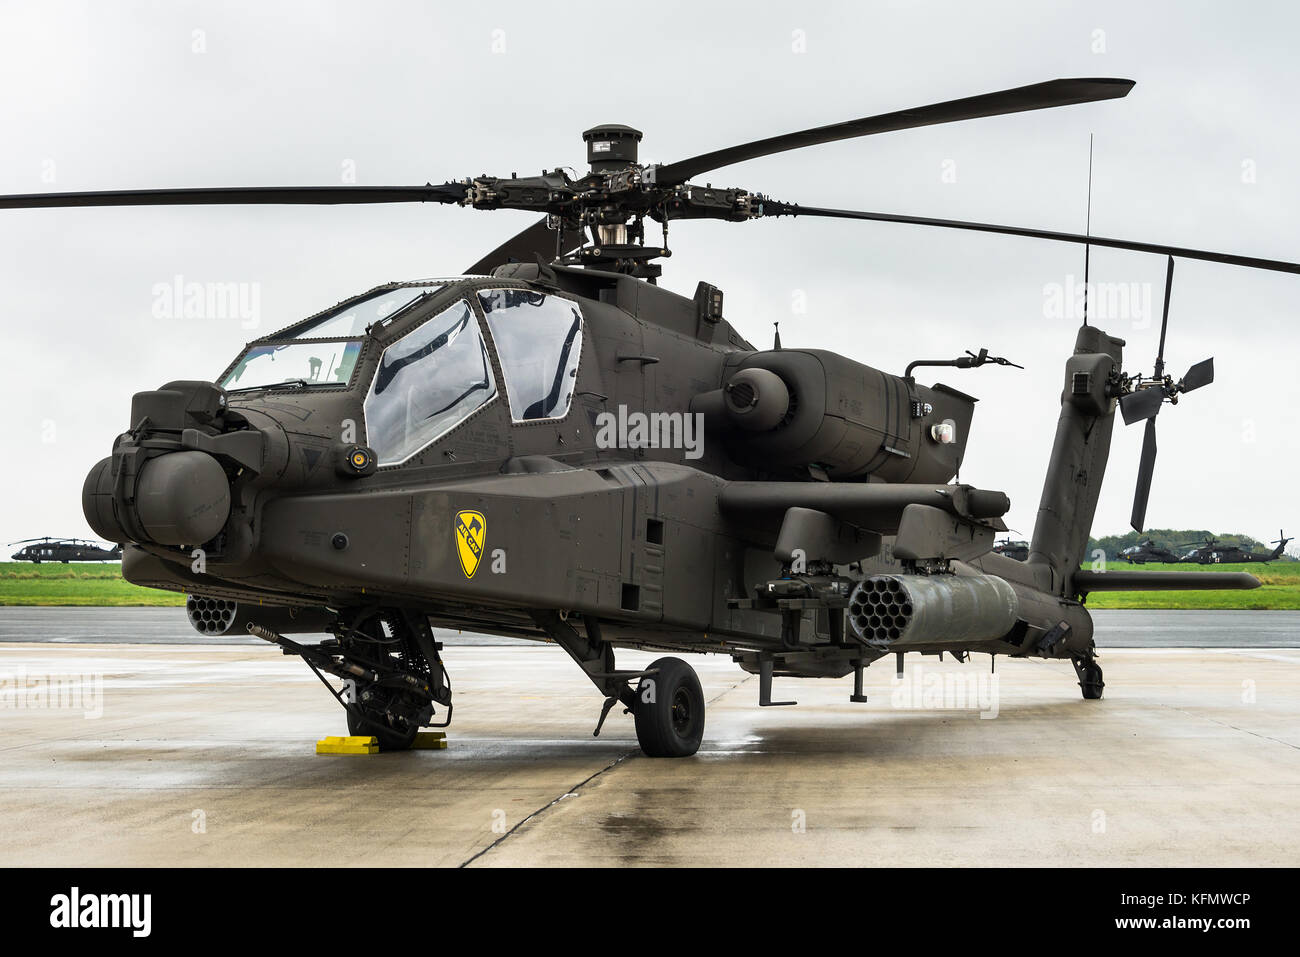 Un Boeing helicóptero de ataque AH-64 Apache de la 1ª Brigada Aérea de Caballería del Ejército de los Estados Unidos en la Base Aérea de Chièvres en Bélgica. Foto de stock